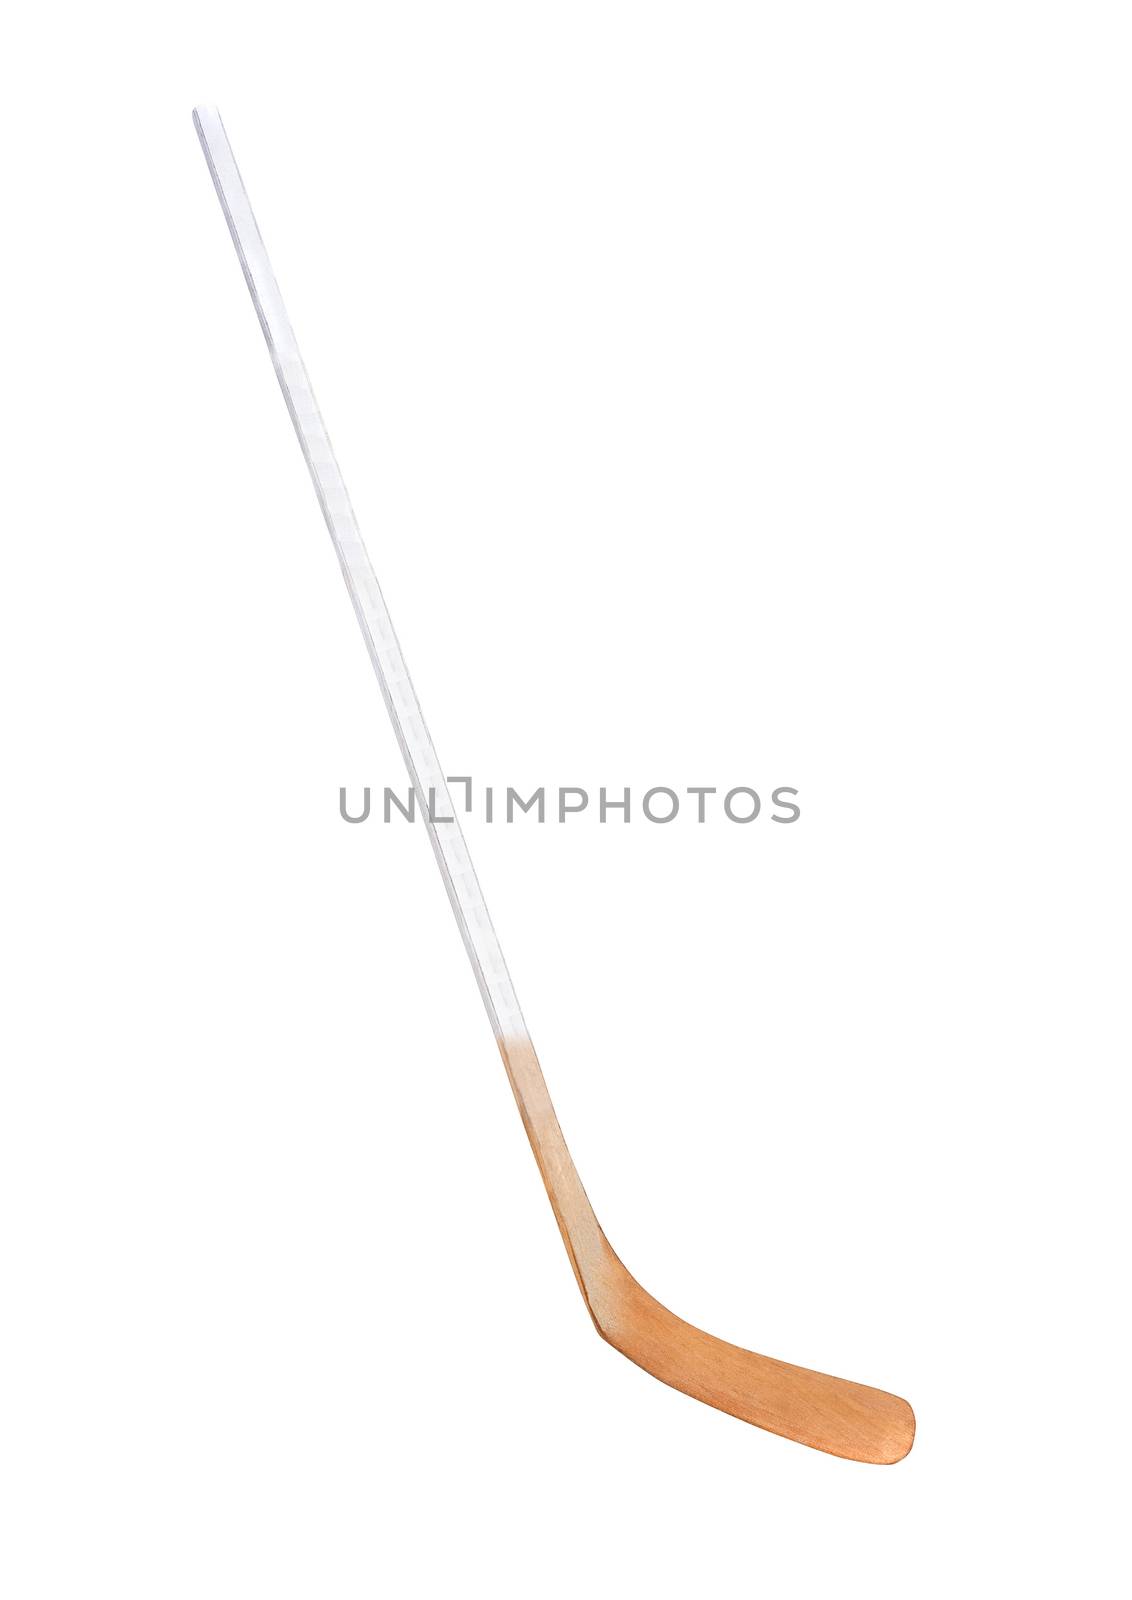 Ice hockey stick by ozaiachin